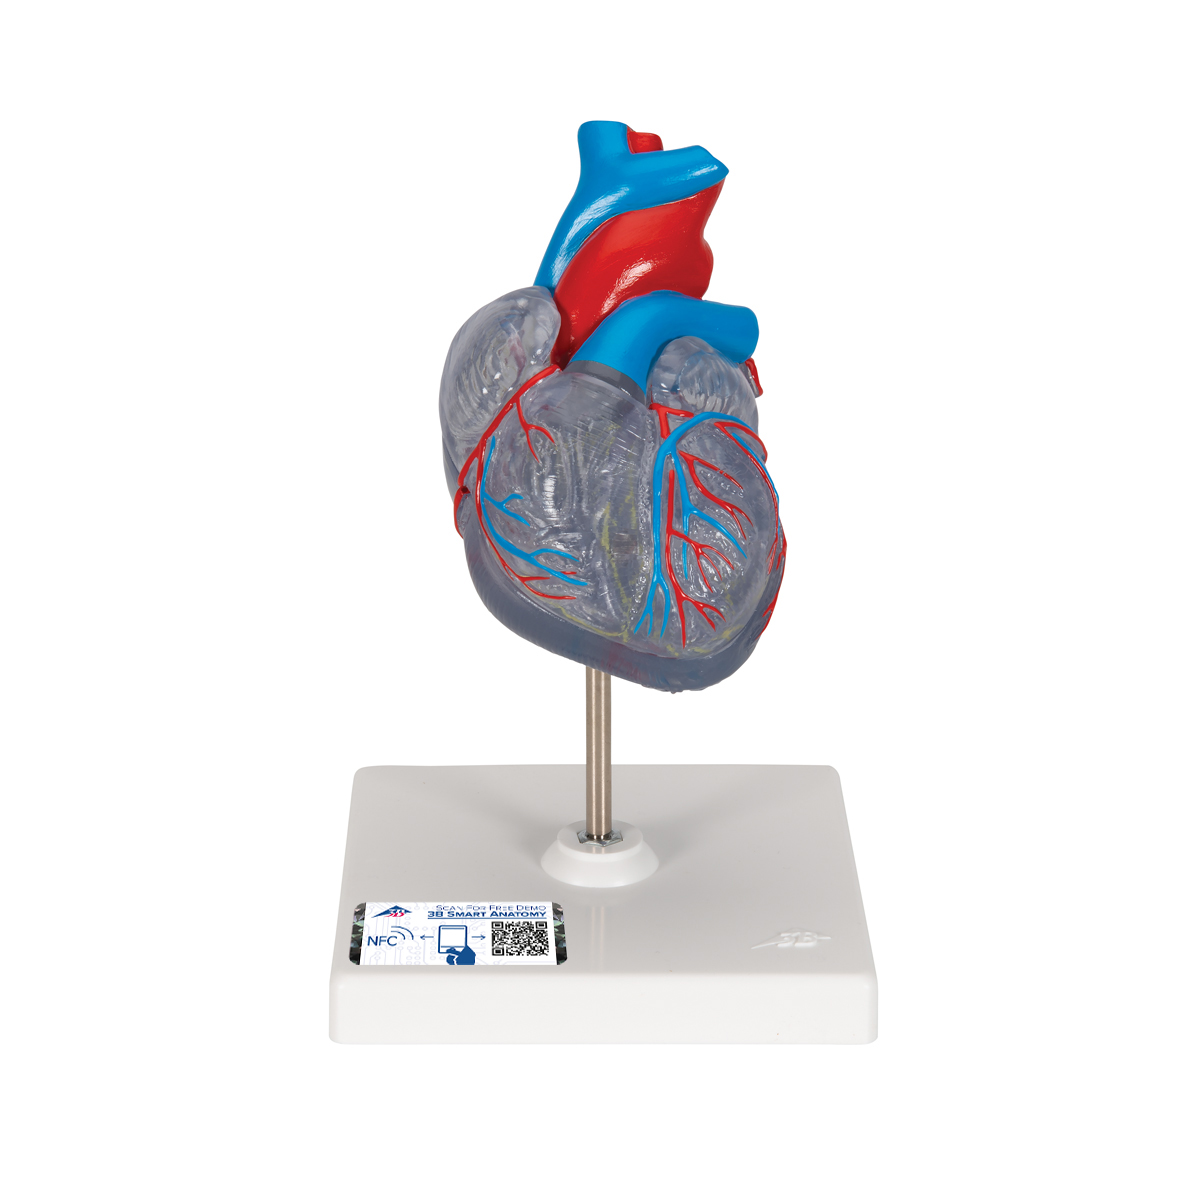 Herzmodell "Klassik" mit Reizleitungssystem, 2 teilig - 3B Smart Anatomy, Bestellnummer 1019311, G08/3, 3B Scientific